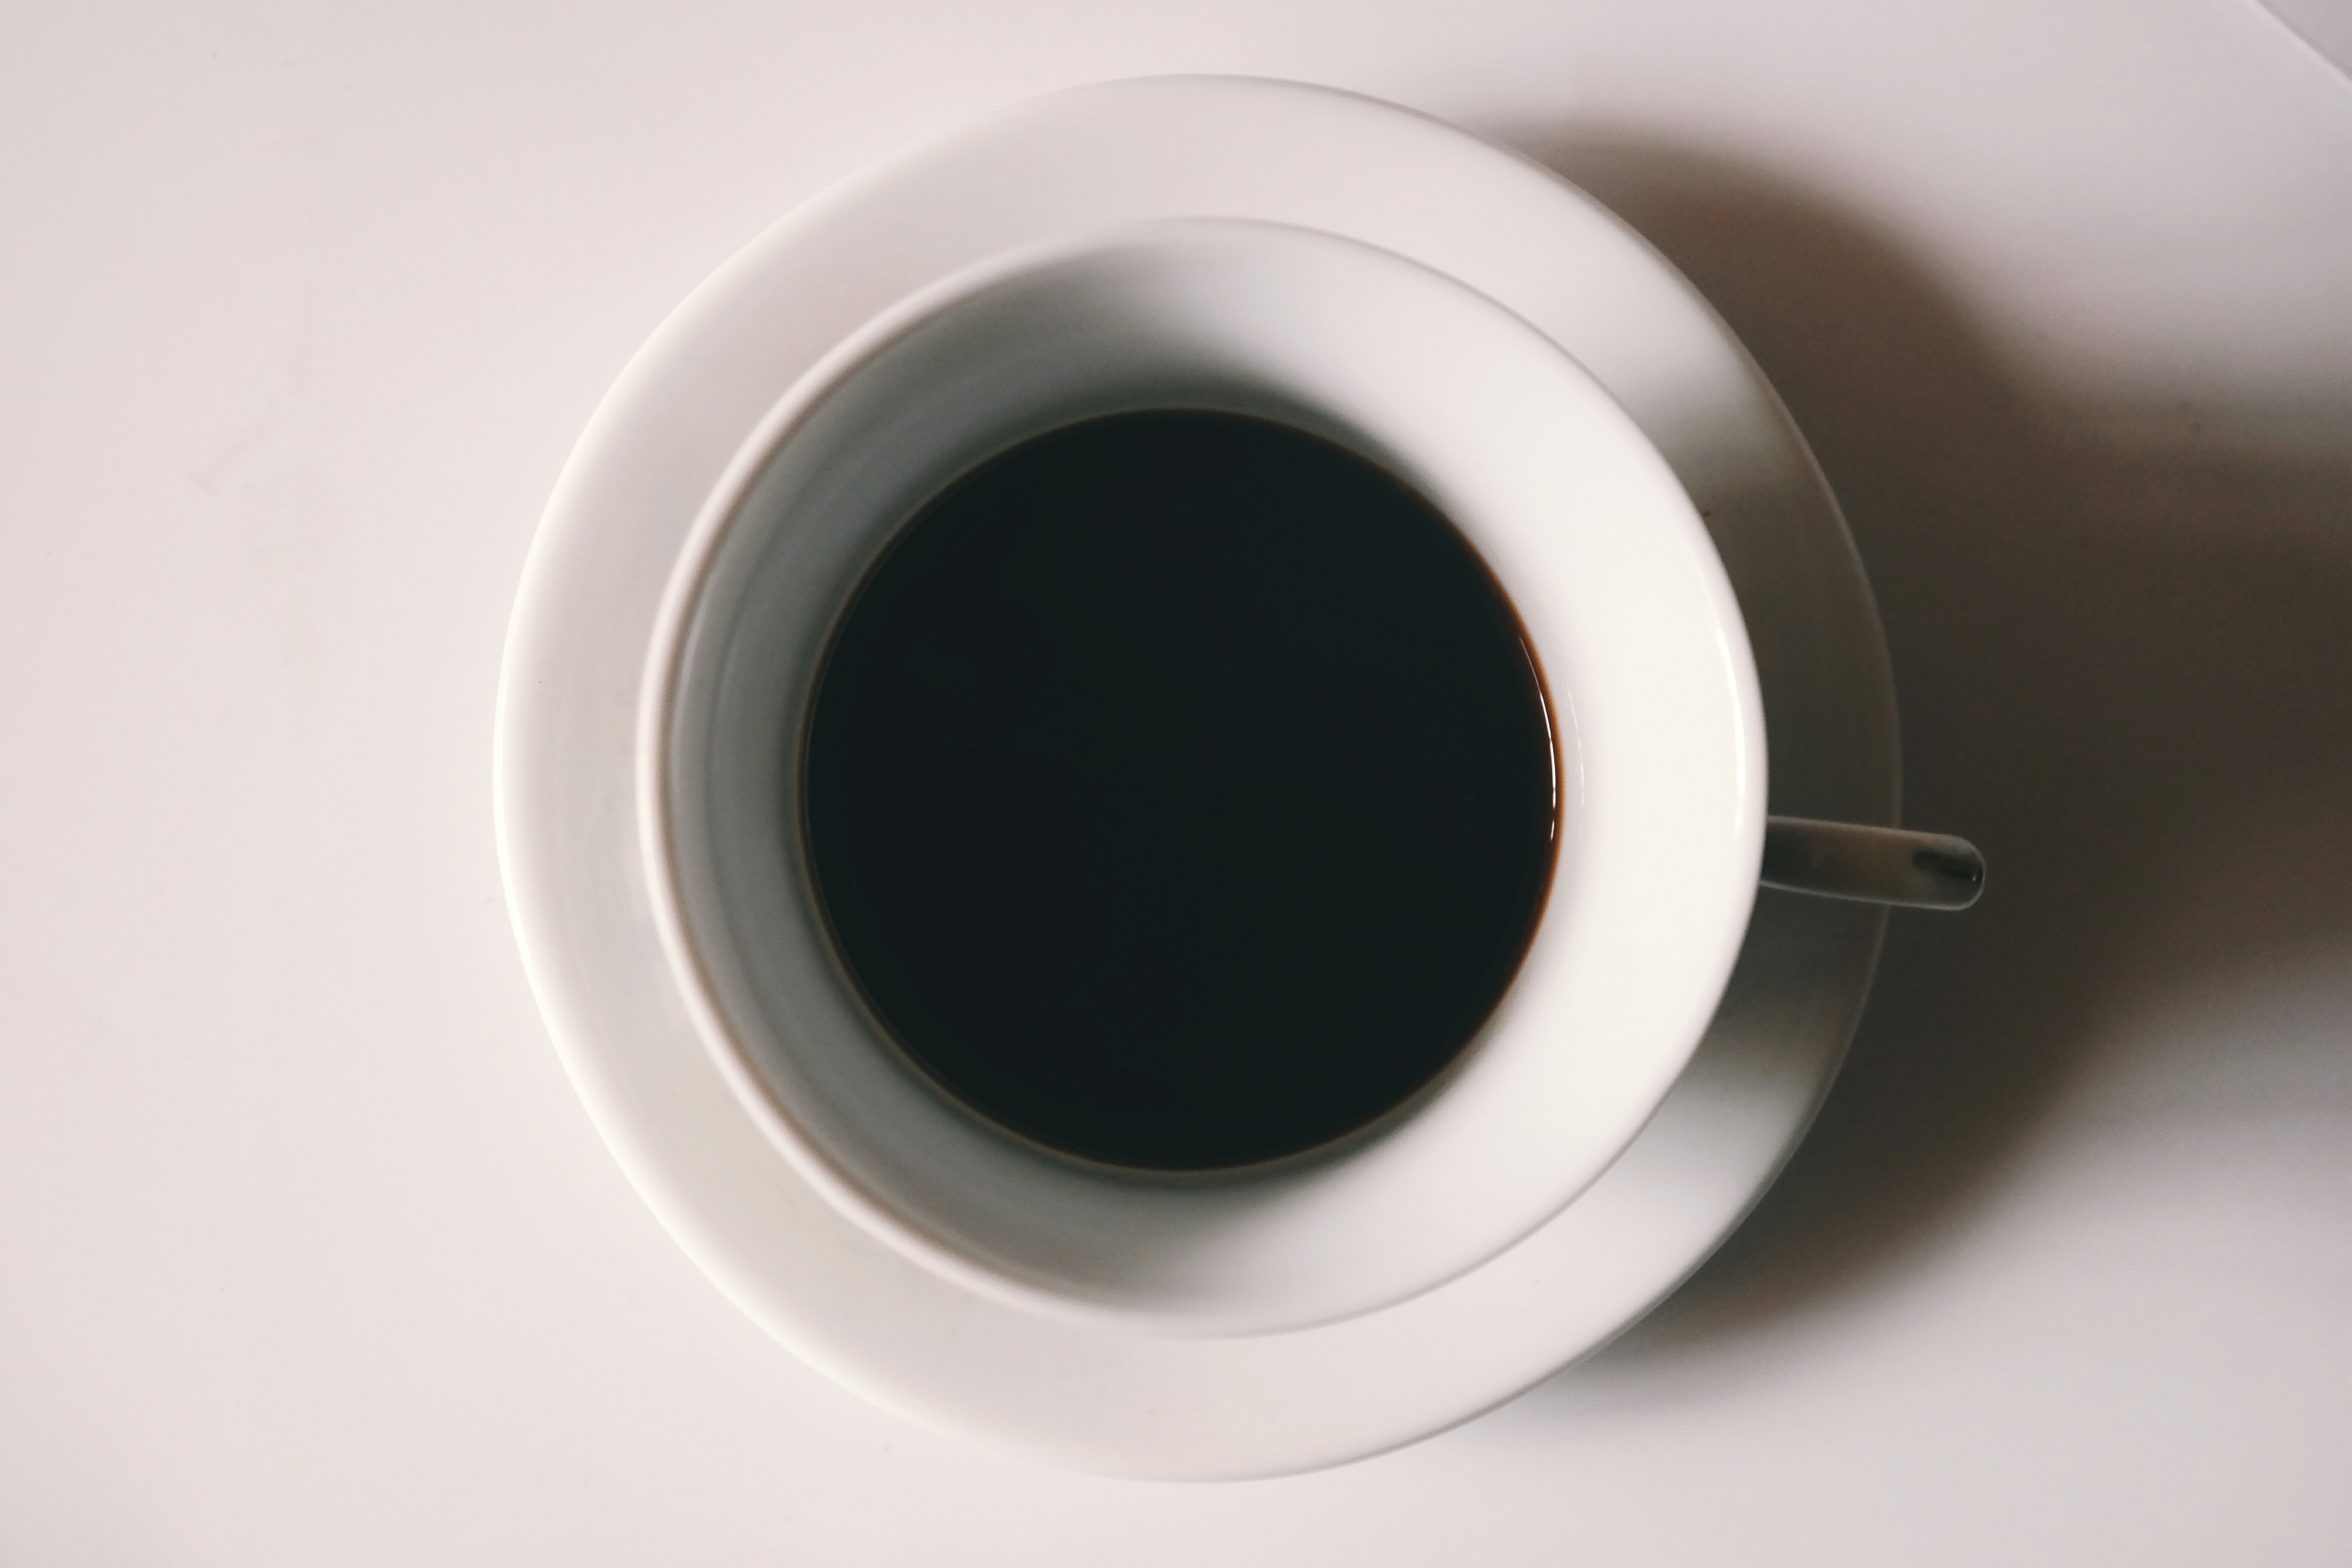 Black liquid in white ceramic mug photo